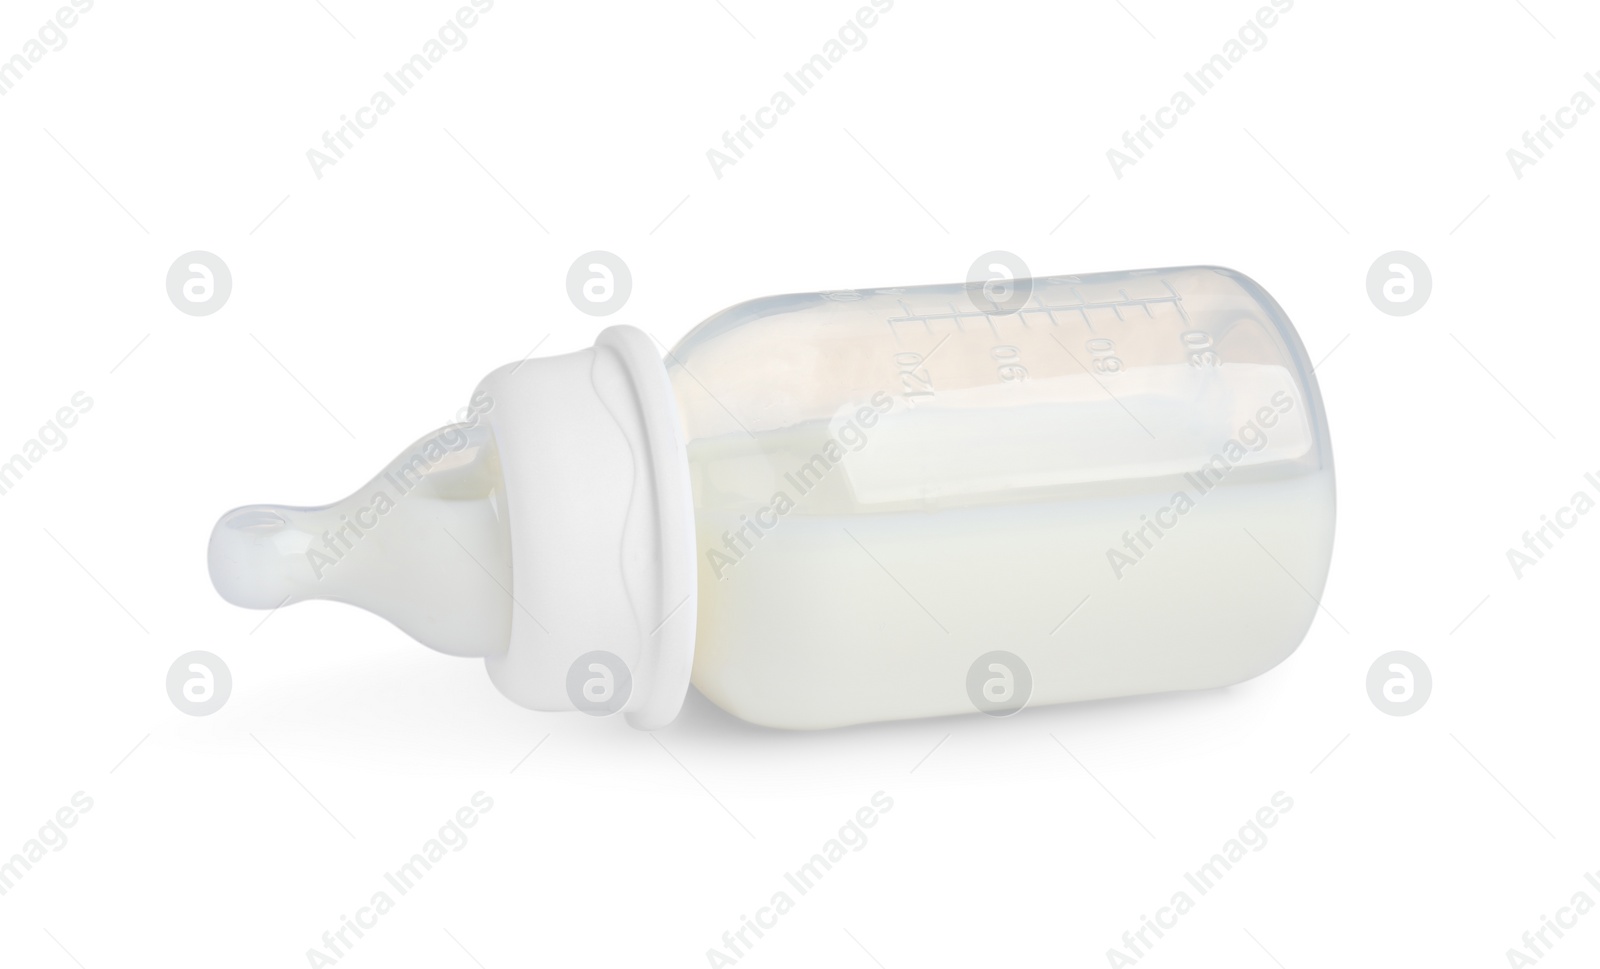 Photo of One feeding bottle with infant formula on white background